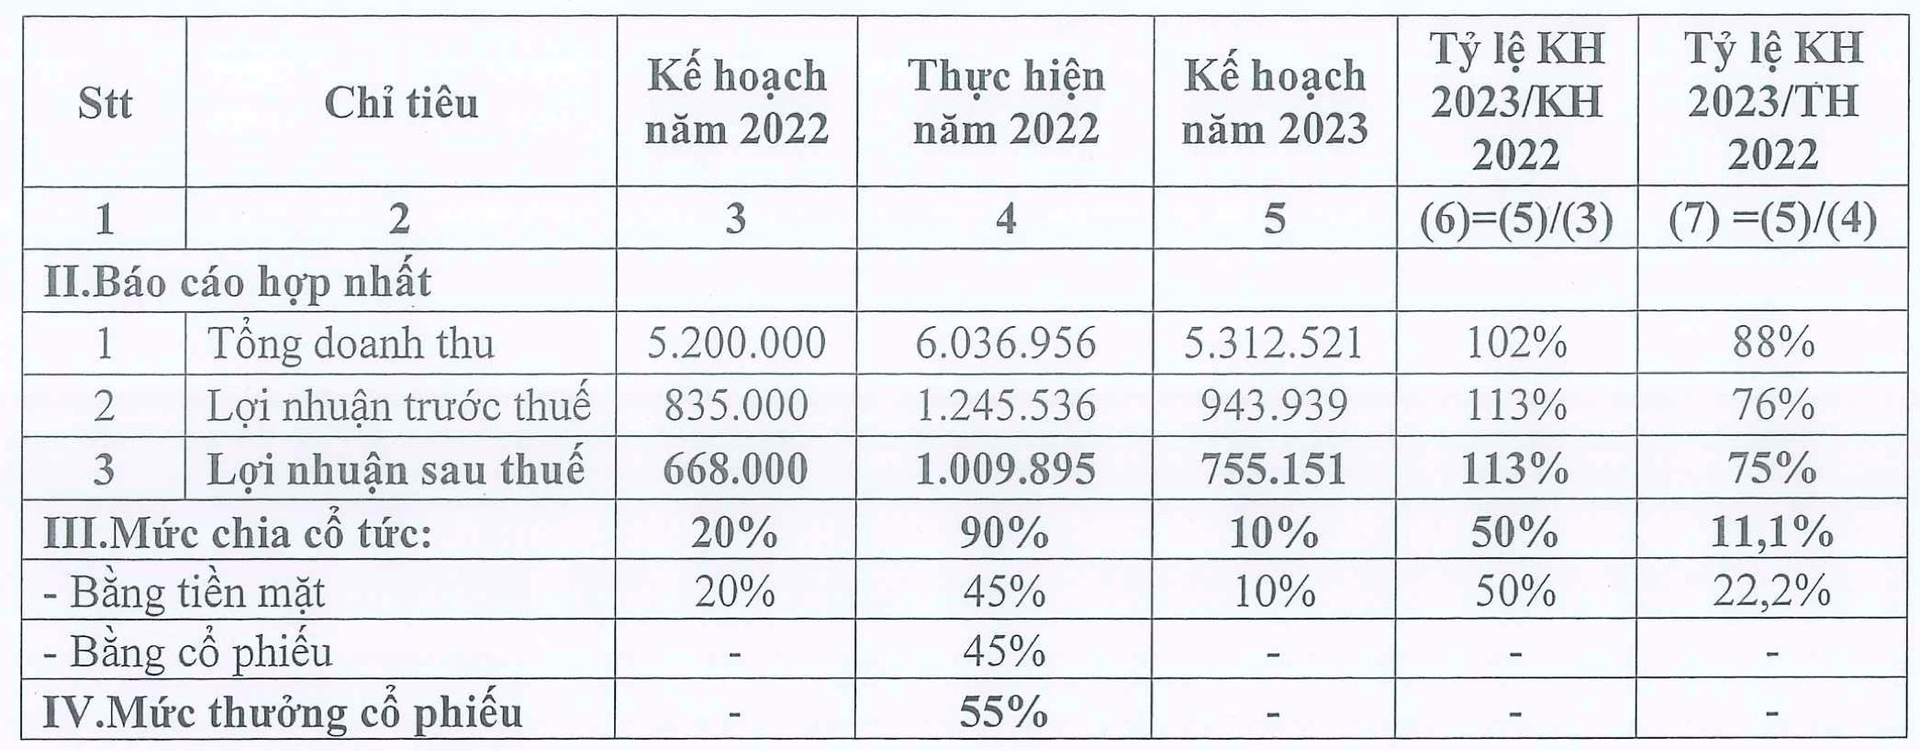 Đầu tư Sài Gòn VRG (SIP) muốn nâng cổ tức năm 2022 bằng tiền lên 45%, dự kiến tăng gấp đôi vốn điều lệ - Ảnh 1.